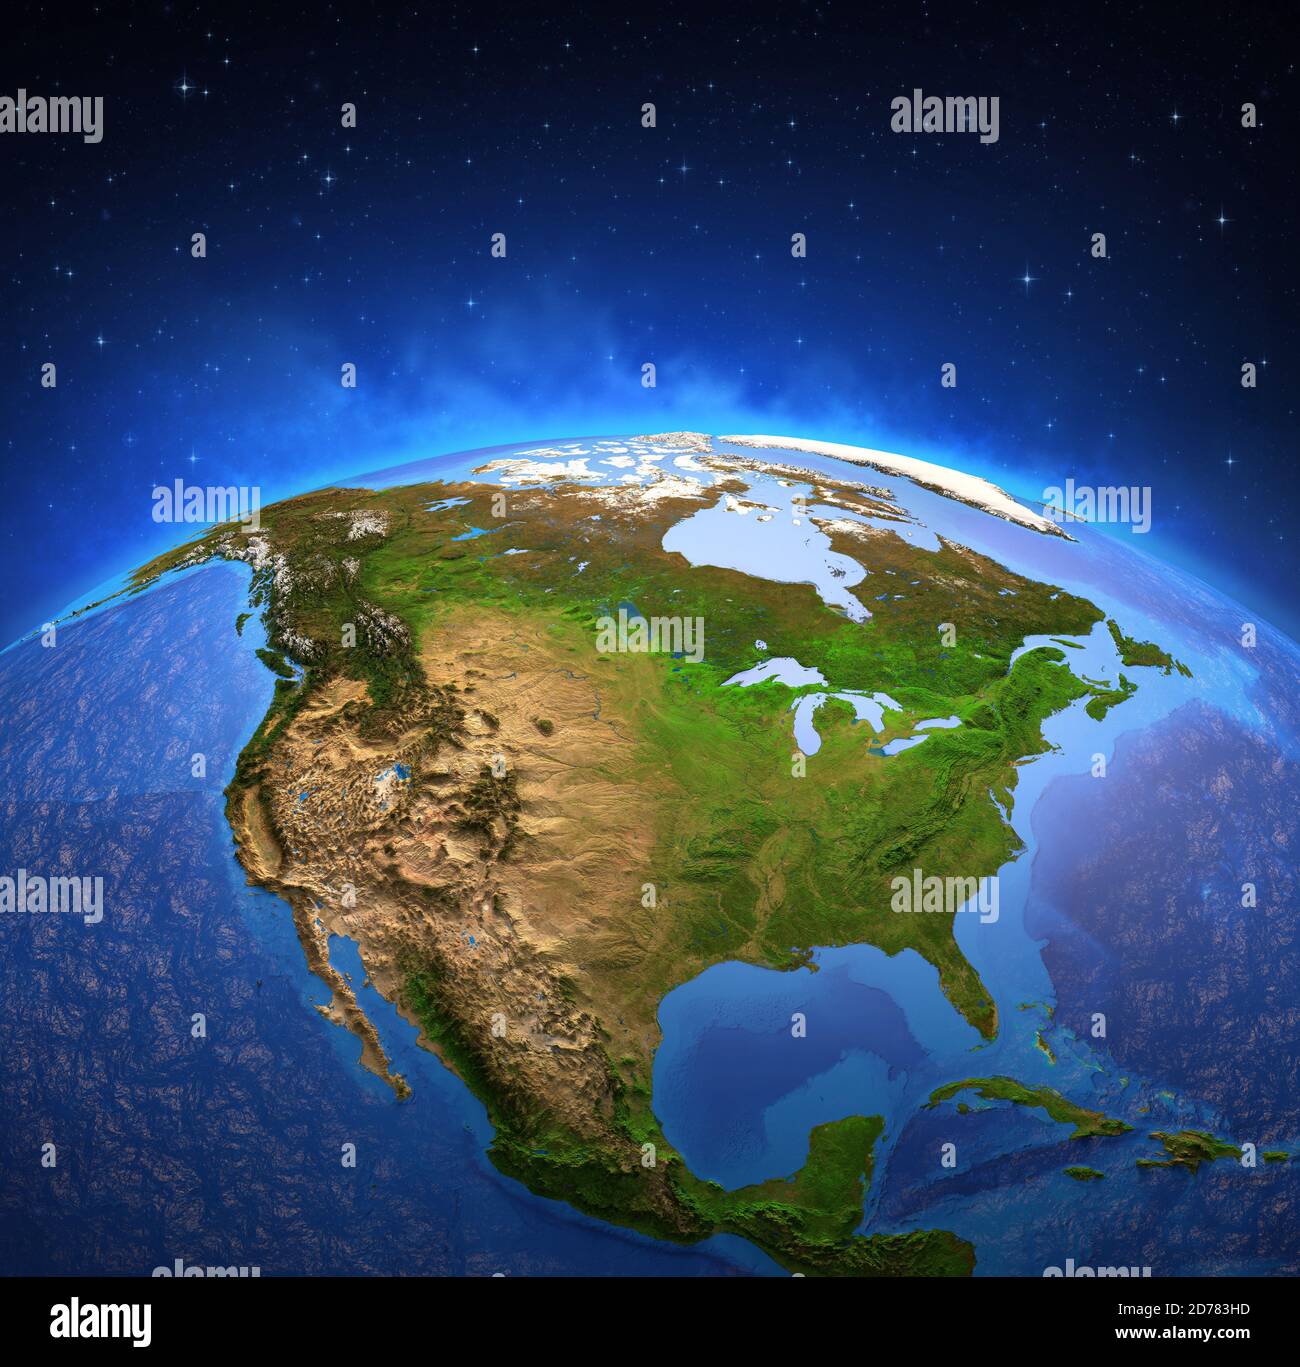 Superficie del planeta Tierra vista desde un satélite, centrado en América del Norte. Mapa físico de los Estados Unidos de América y Canadá. Ilustración 3D - elemento Foto de stock